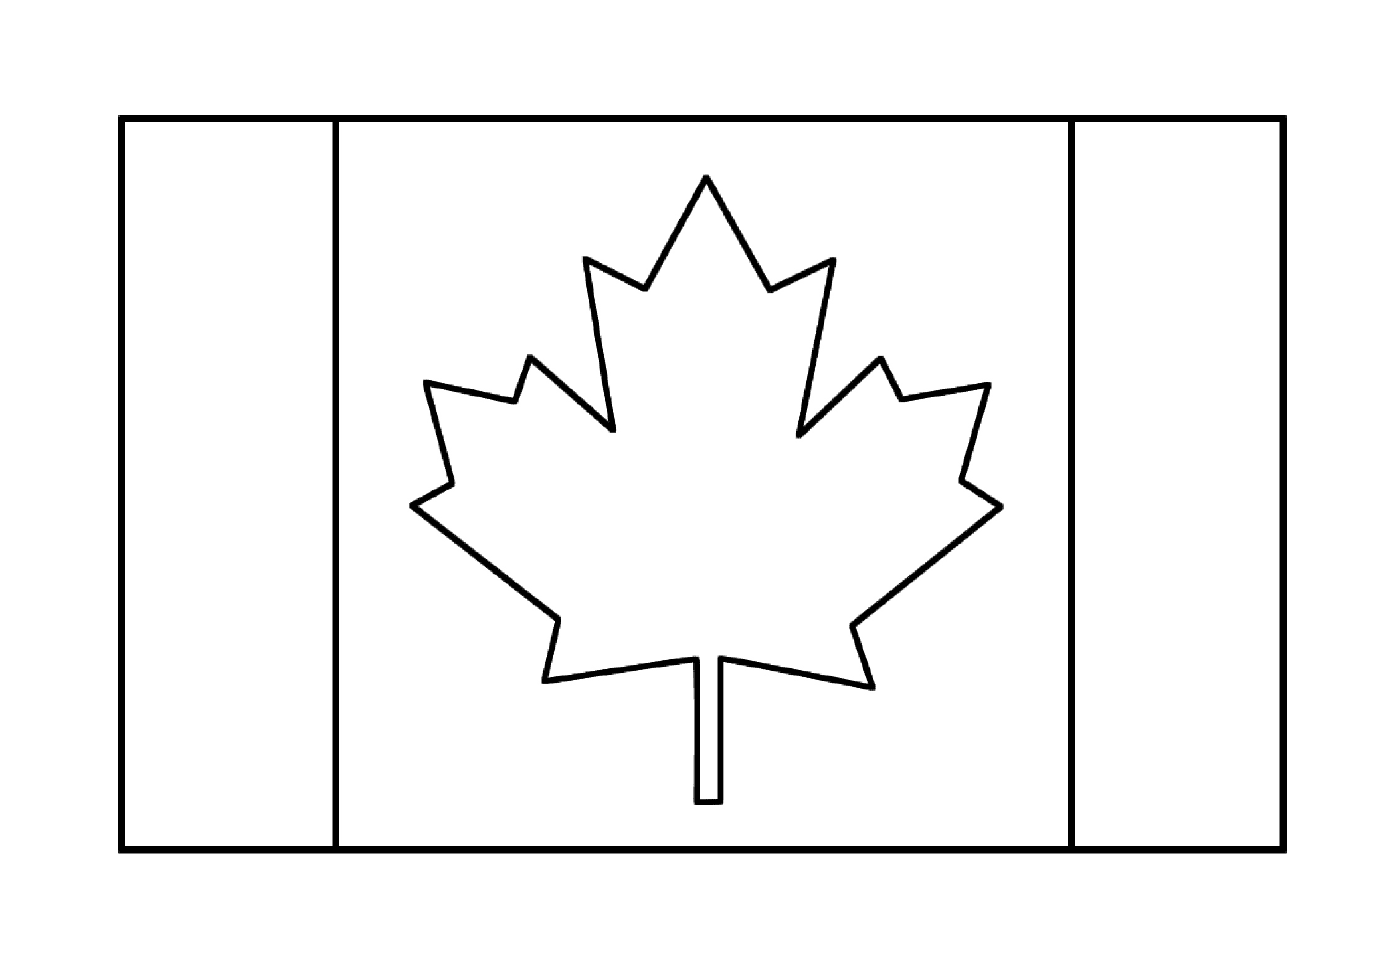  العلم الكندي 